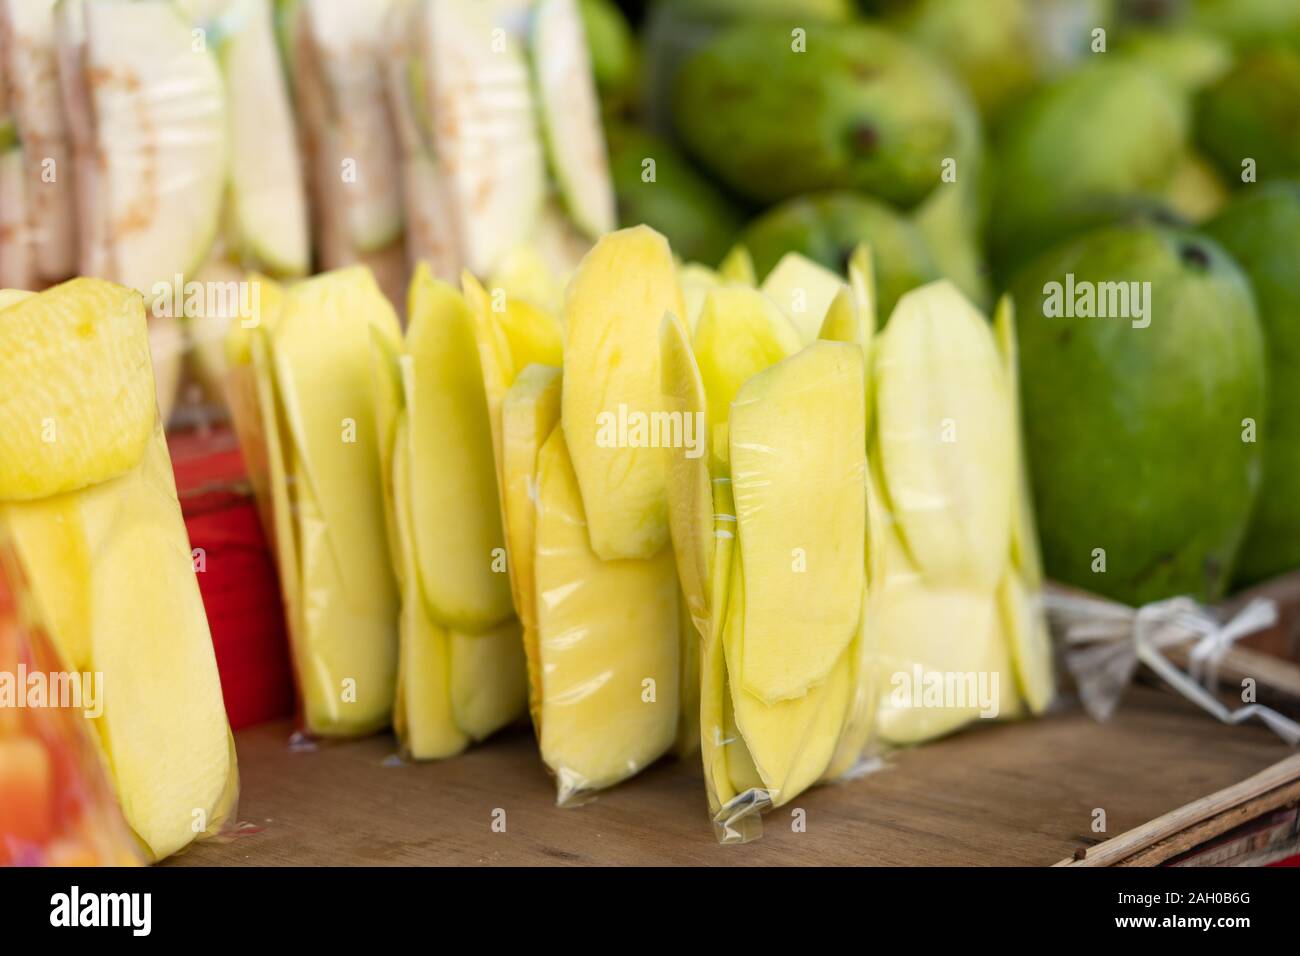 Ein beliebter Snack Street Food häufig auf den Philippinen verkauft, Scheiben der unreife grüne Mango, die haben einen säuerlichen Geschmack. Normalerweise mit Salz bestreut, wenn Stockfoto